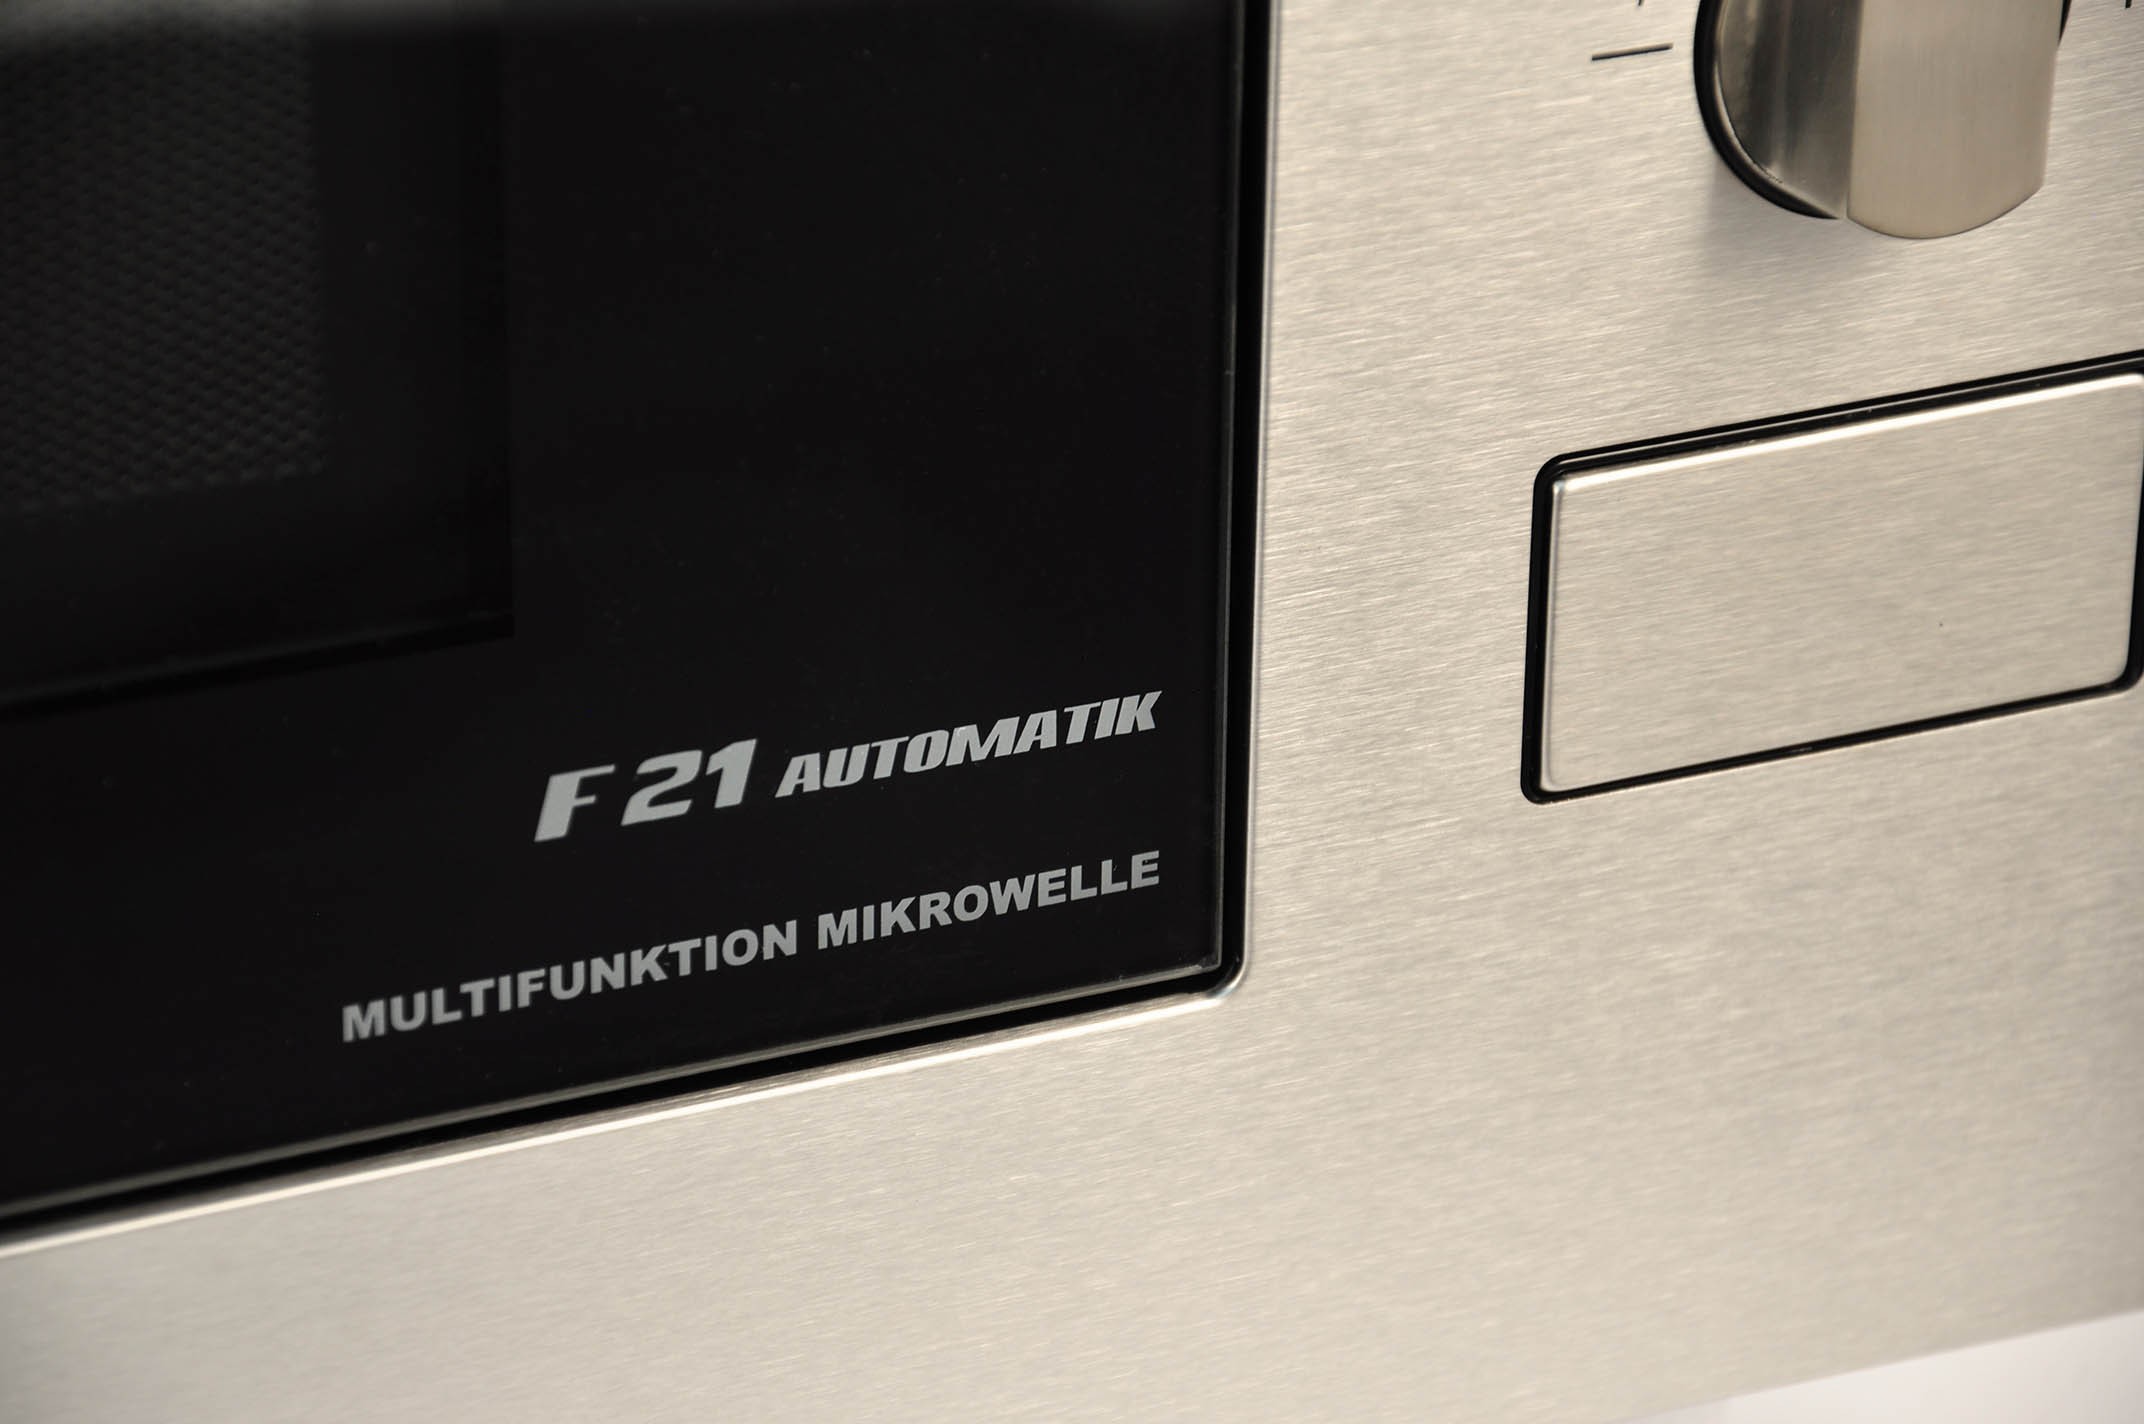 Микроволновая печь Kaiser EM 2520 характеристики - фотография 7